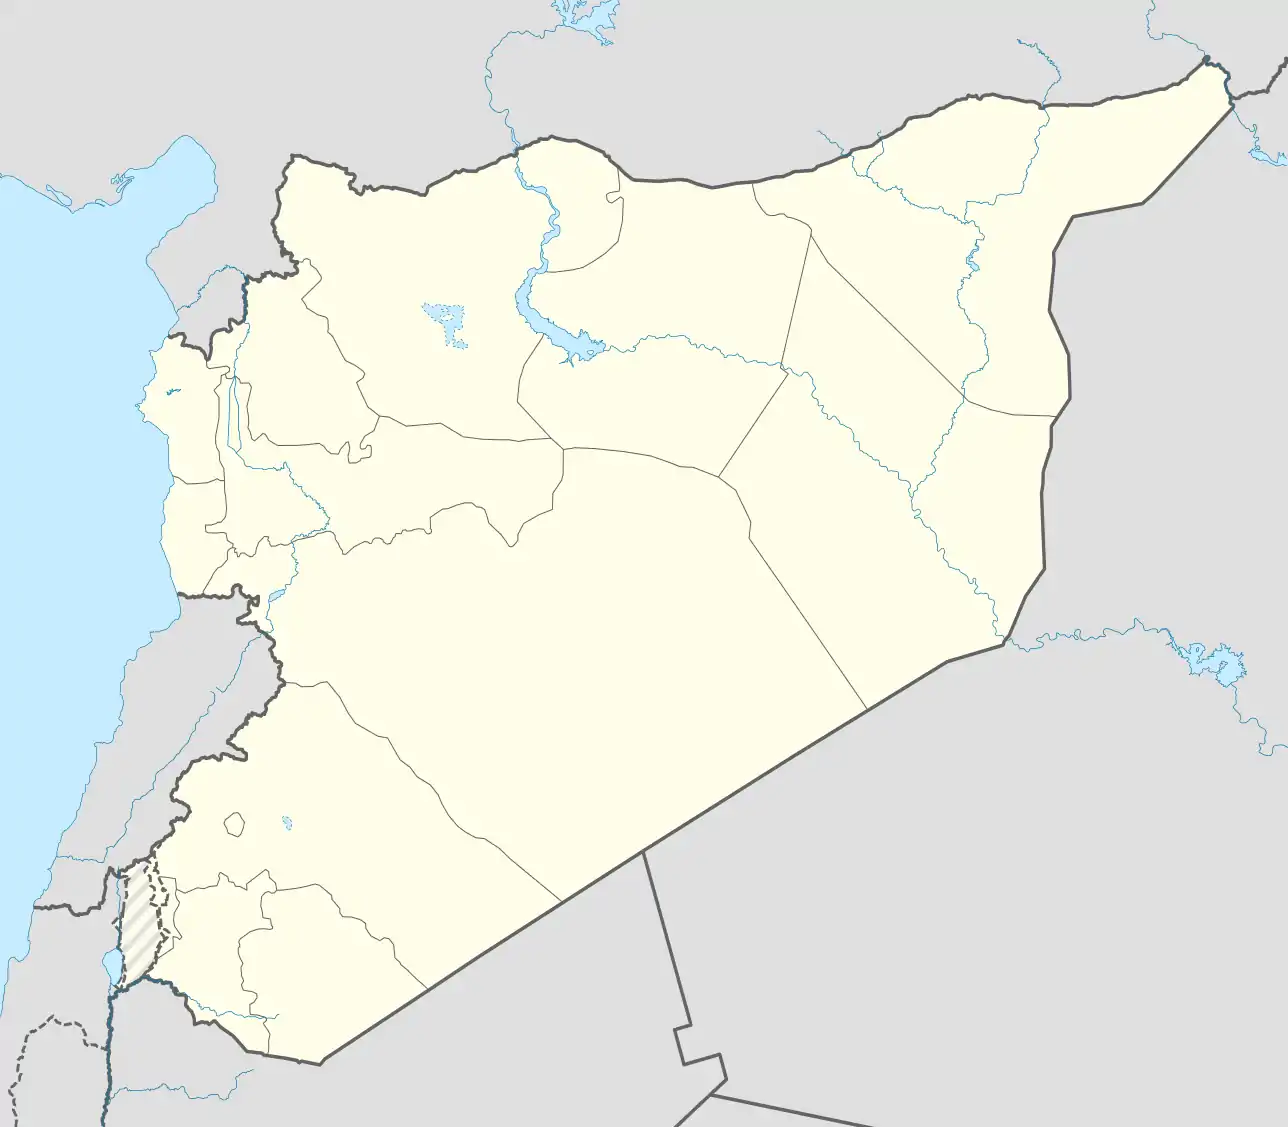 Voir sur la carte administrative de Syrie